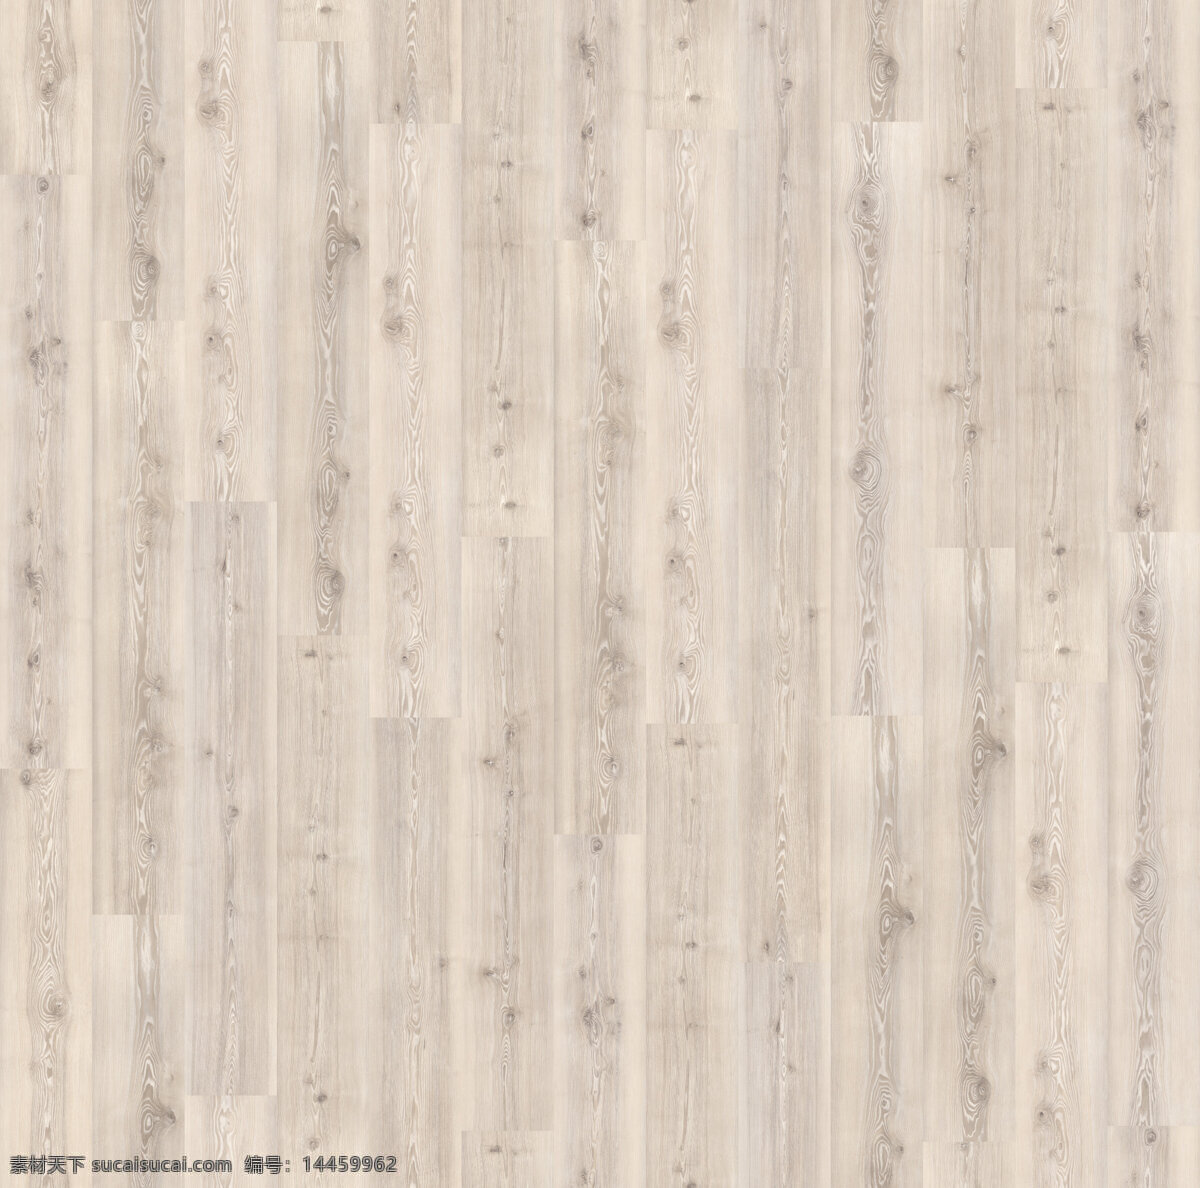 室内装饰 木地板 贴图 室内设计 素材网 简约风格 木材 家具家私 木地板材料 胡桃木纹理 高清3d贴图